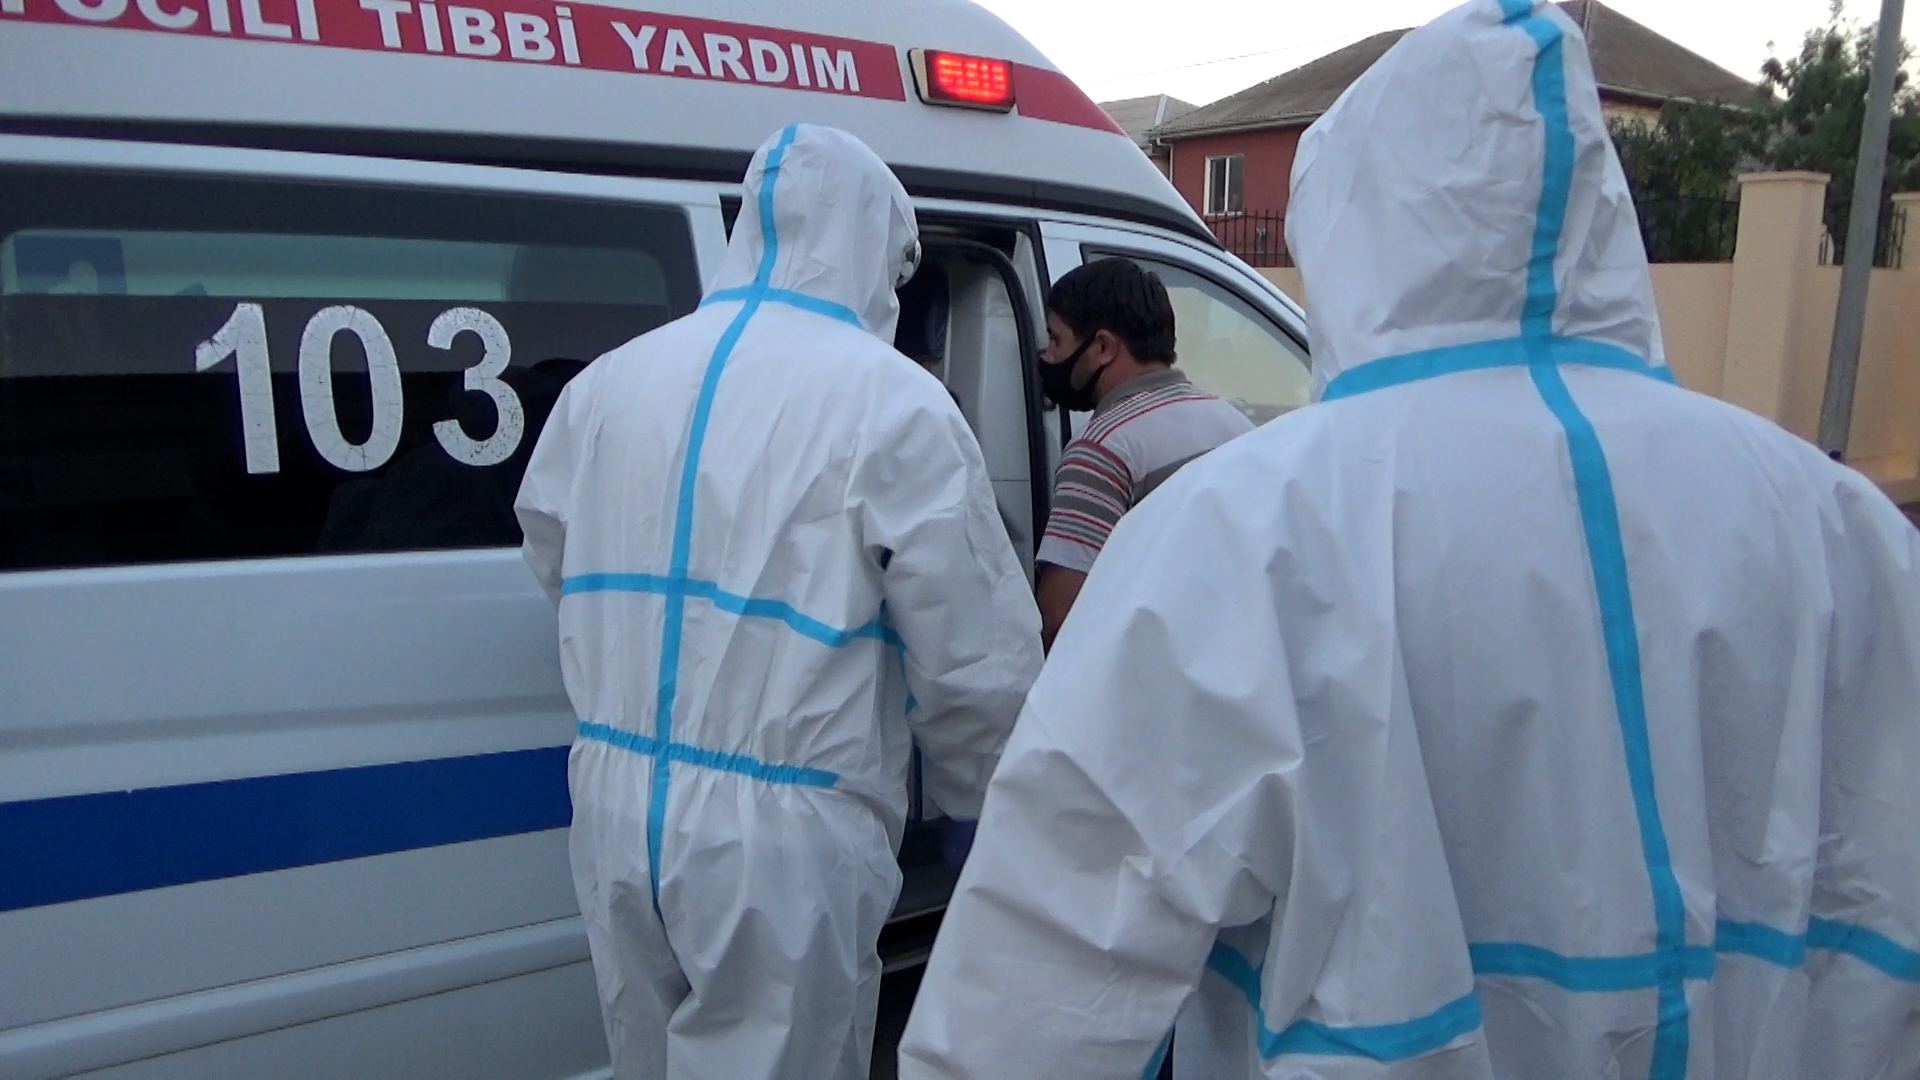 За год в общественных местах в Азербайджане задержали 2 тыс. больных коронавирусом - МВД